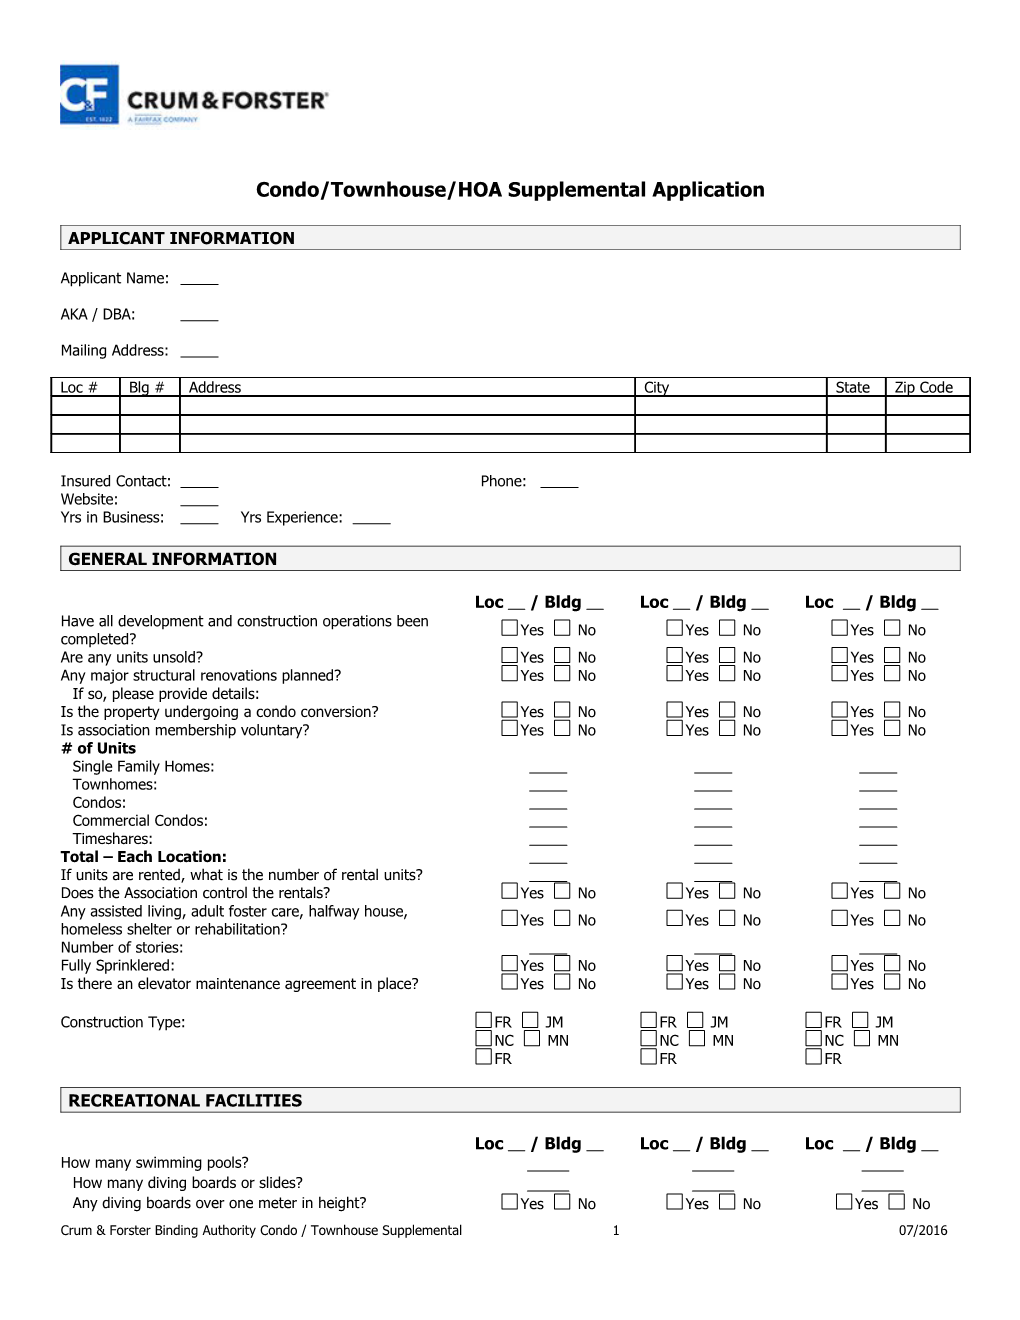 Condo/Townhouse/Hoasupplemental Application